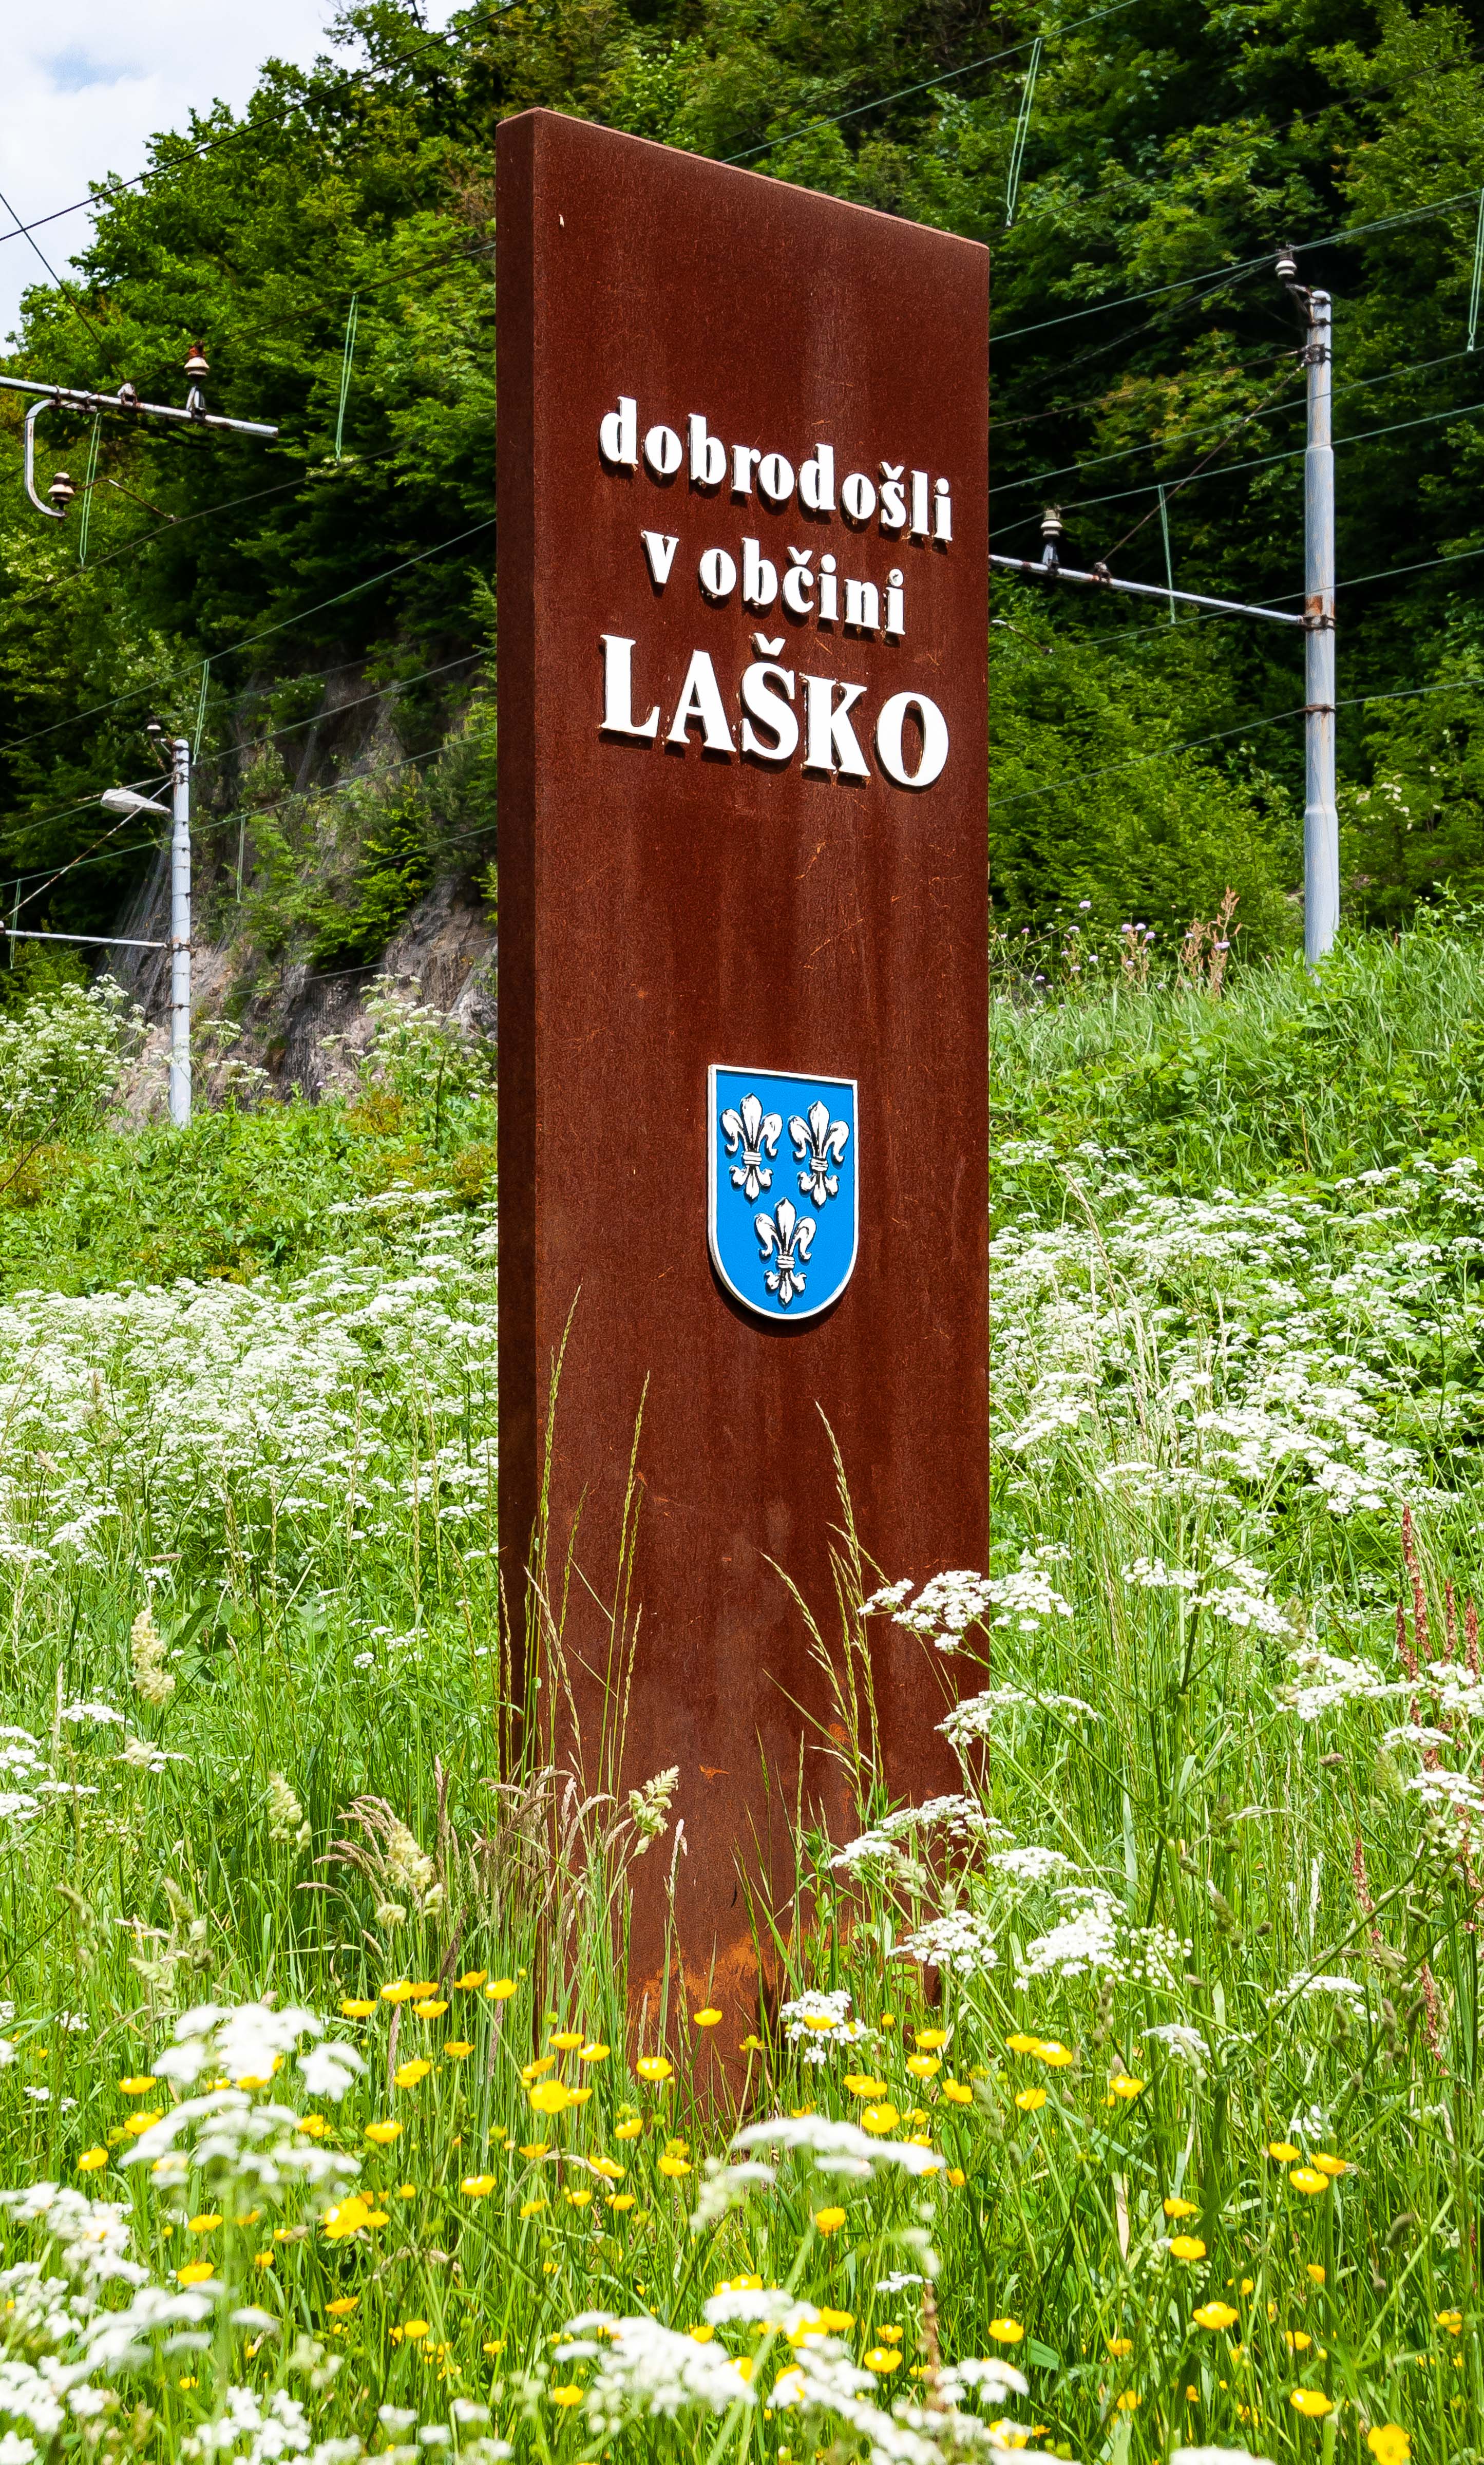 Slovenia, Lasko Prov, Dobrodosli V Obcina Lasko, 2006, IMG 7702